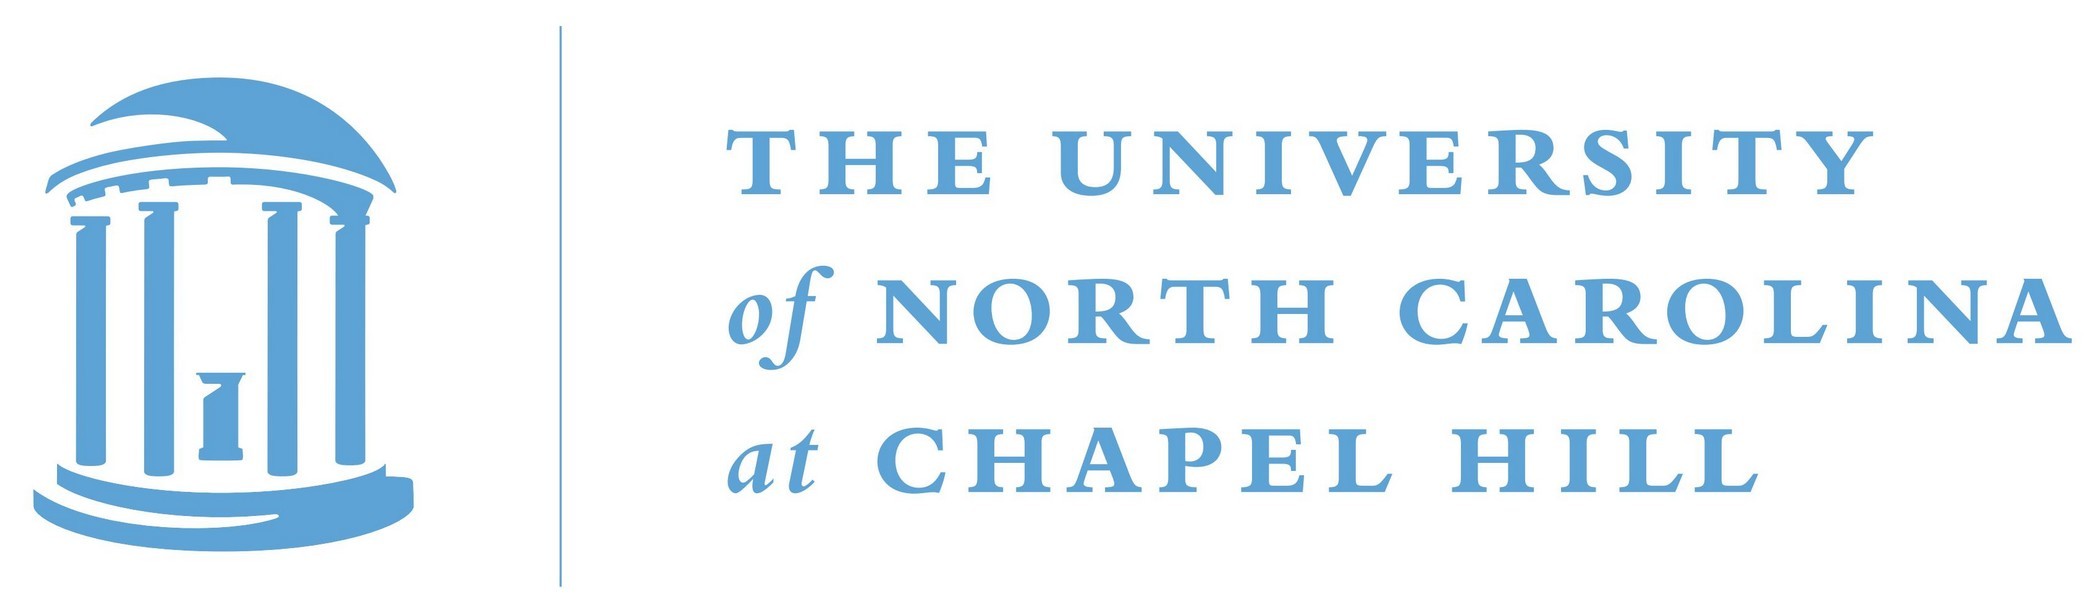 UNC Logo and Seals [University of North Carolina at Chapel Hill - unc.edu]